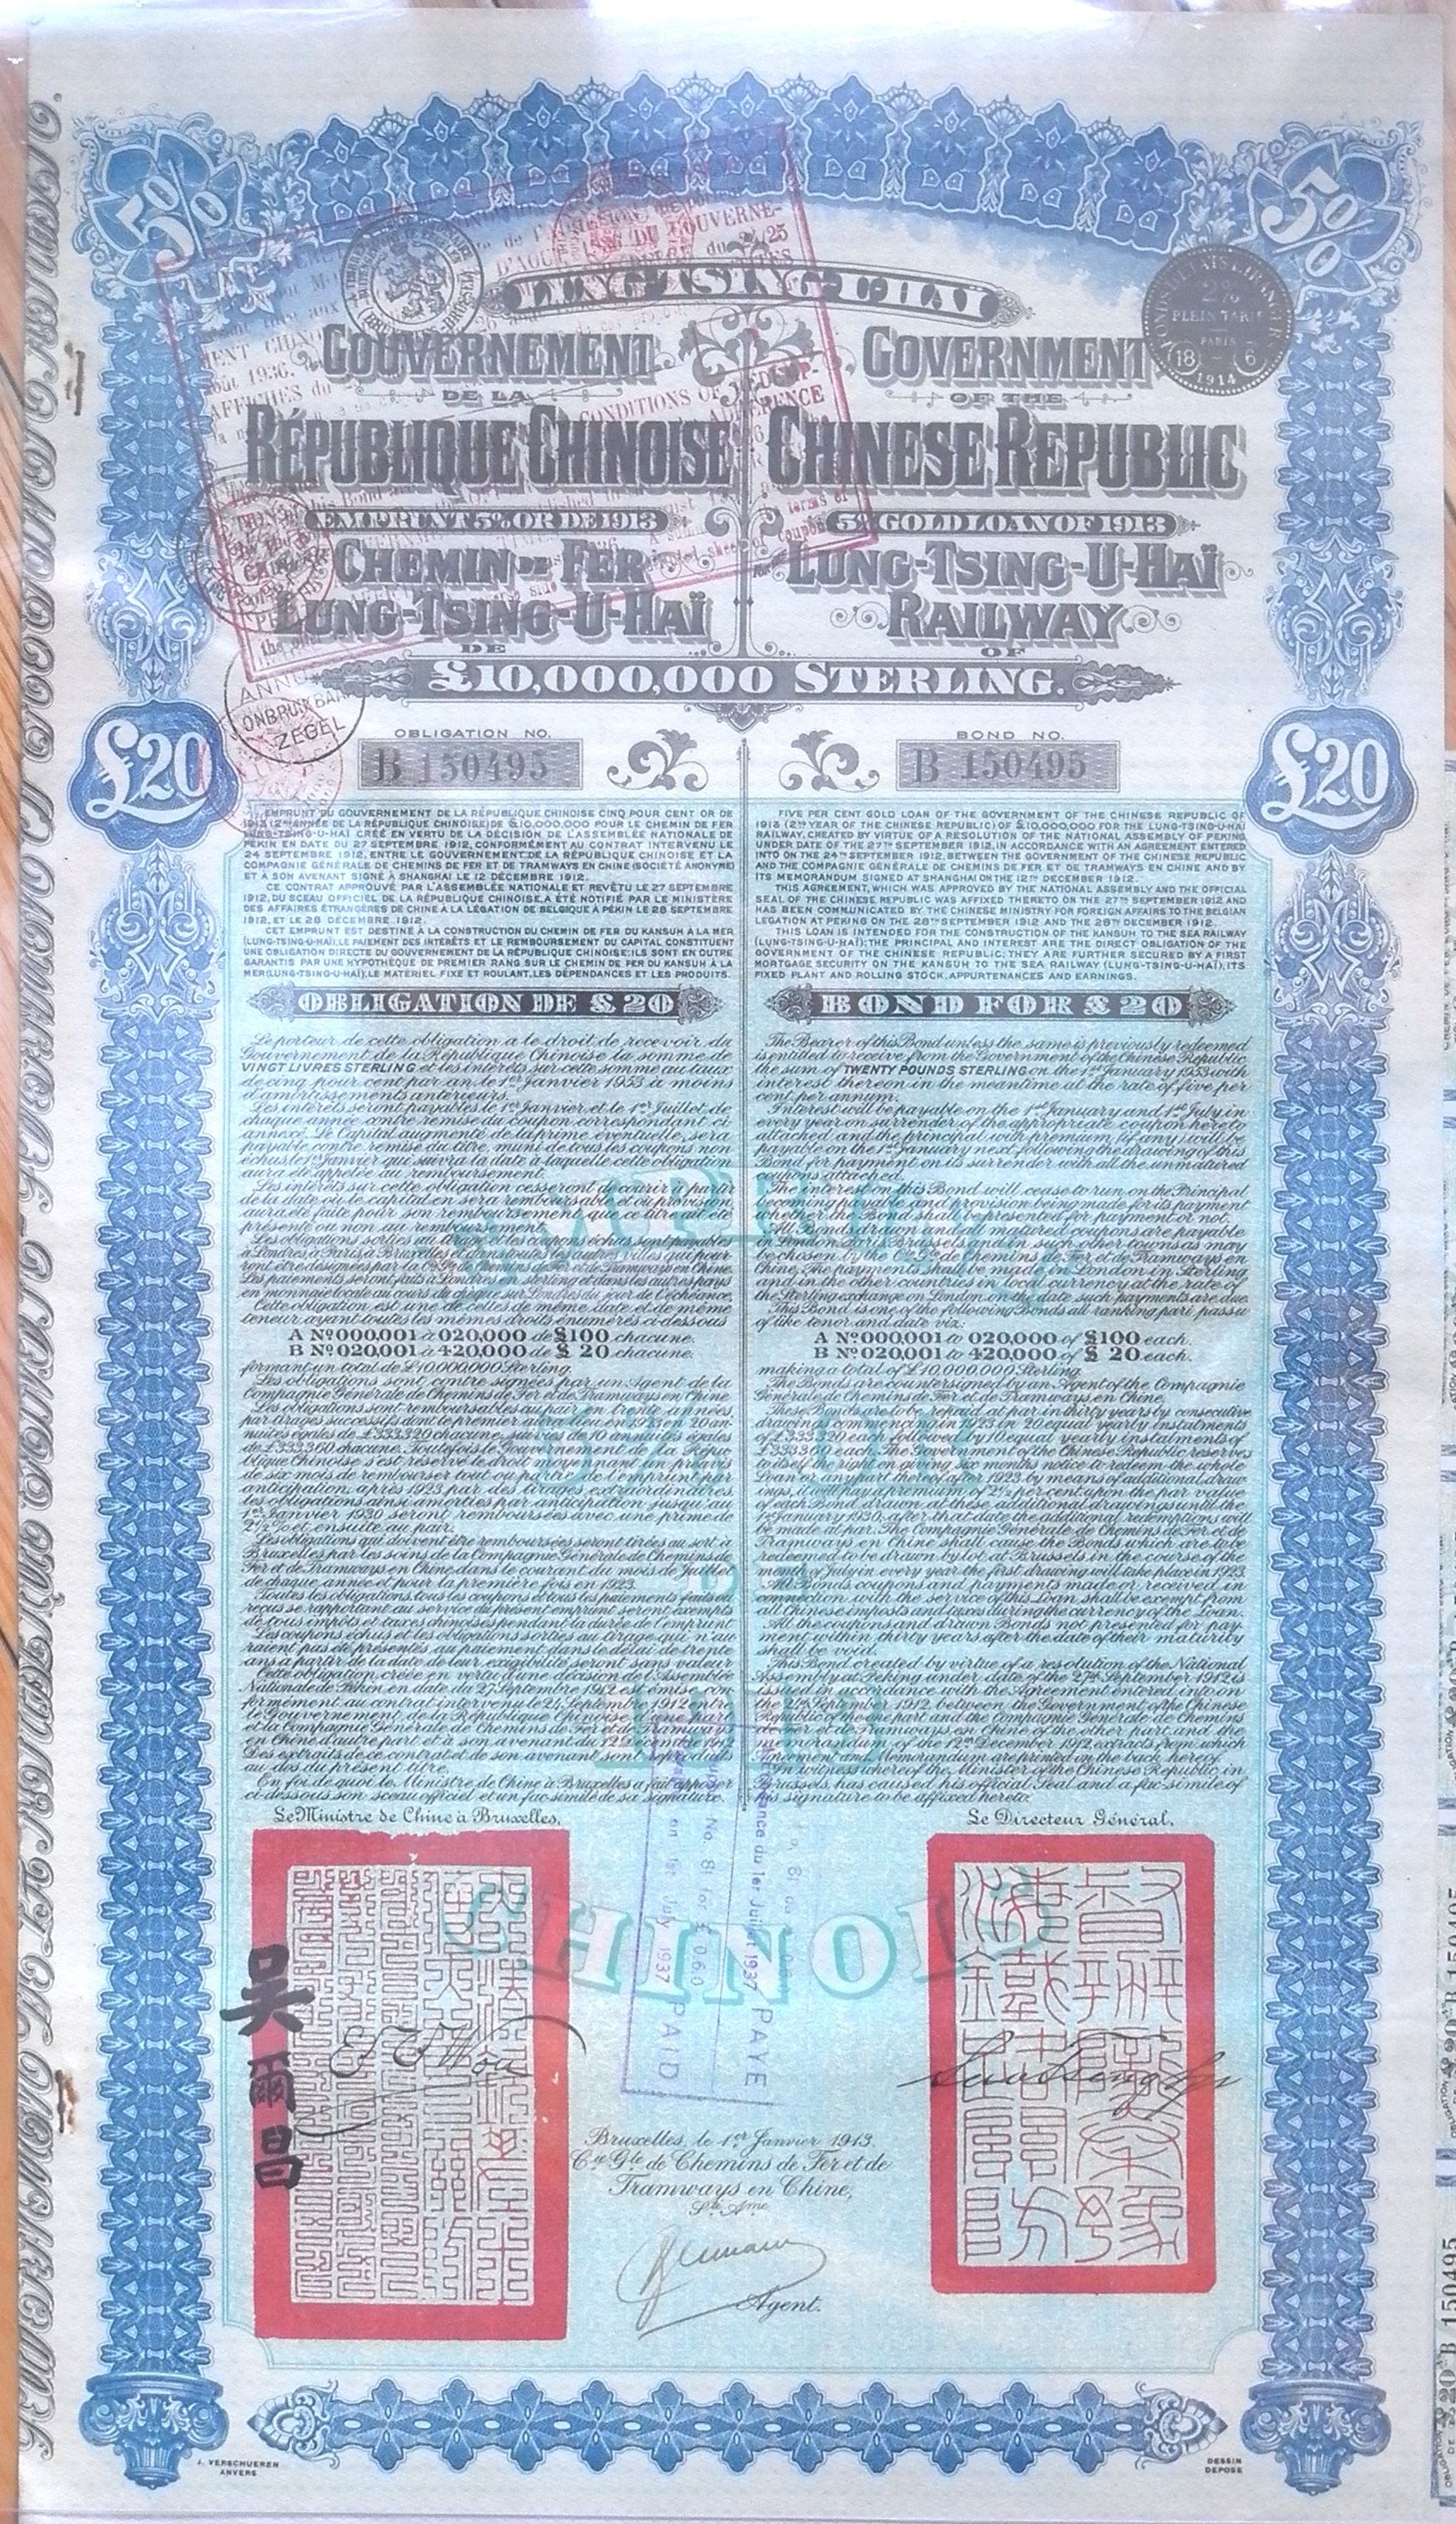 B9040, China 5% Lung-Tsing-U-Hai Railway Bond, 20 Pound Sterling Loan, Super Petchili 1913